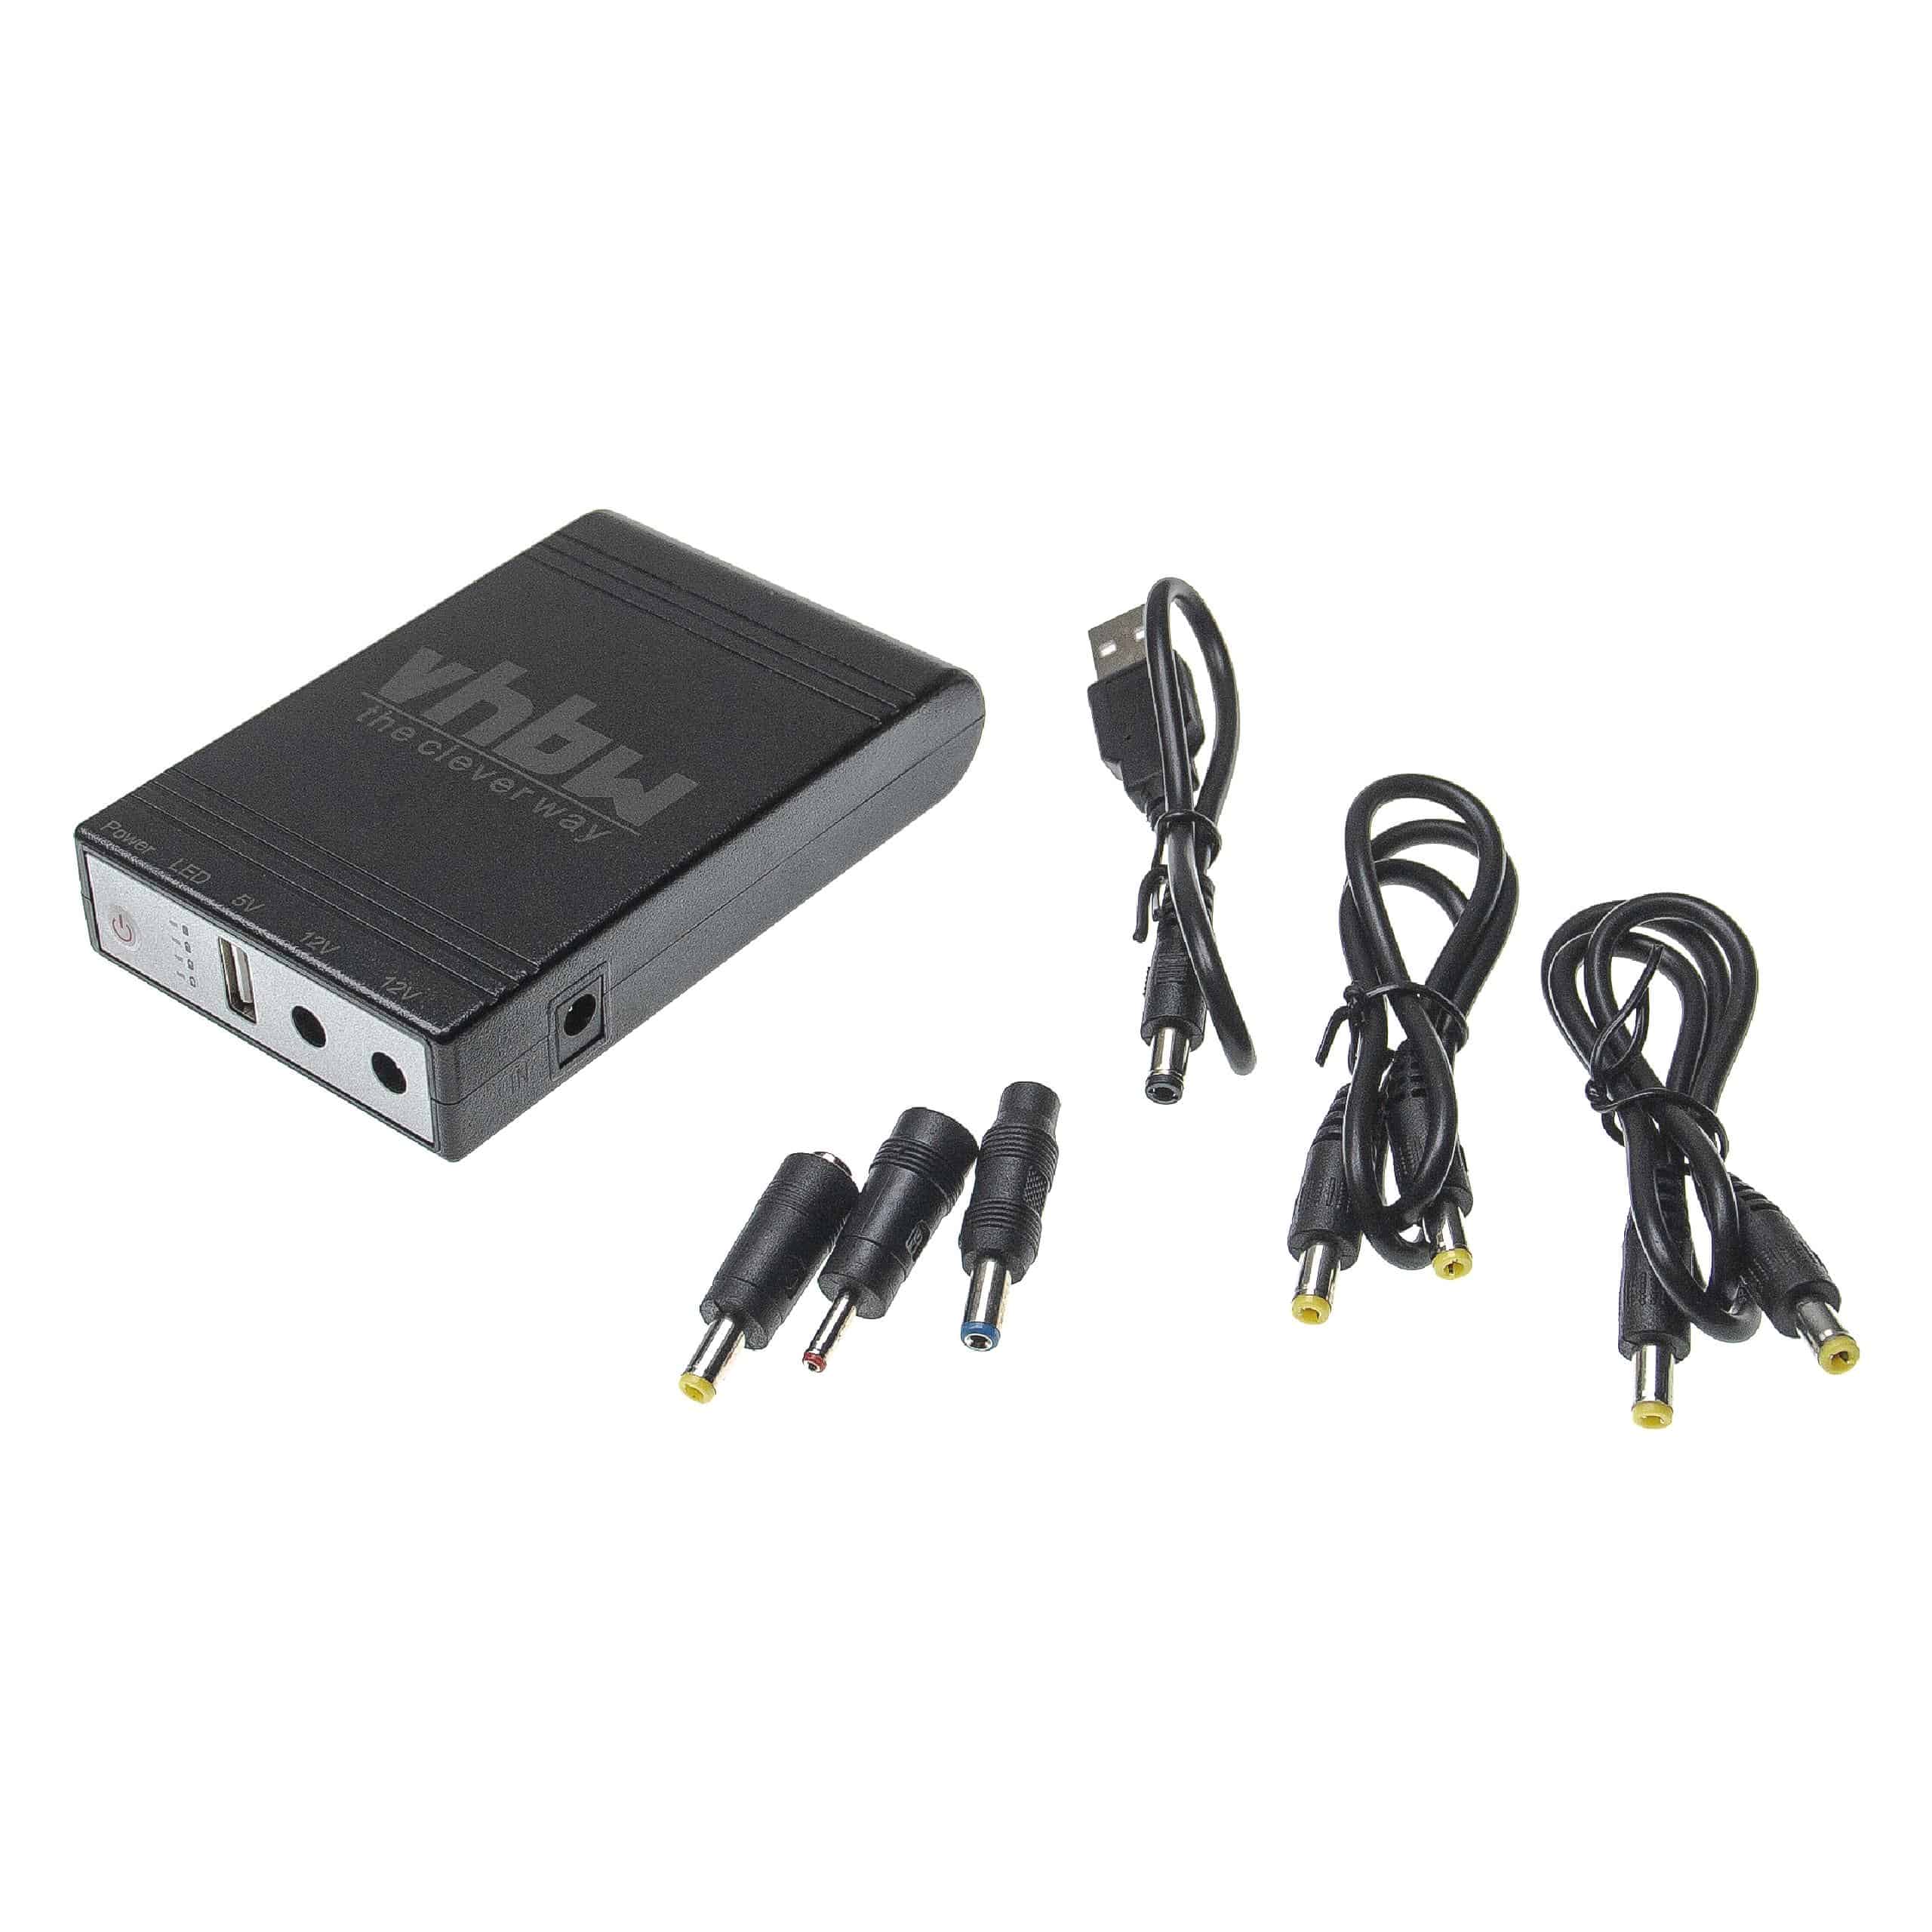 Mini UPS pour routeur, caméra IP, modem, ordinateur, etc. - USB 5 V / DC 12 V, 1,0 A